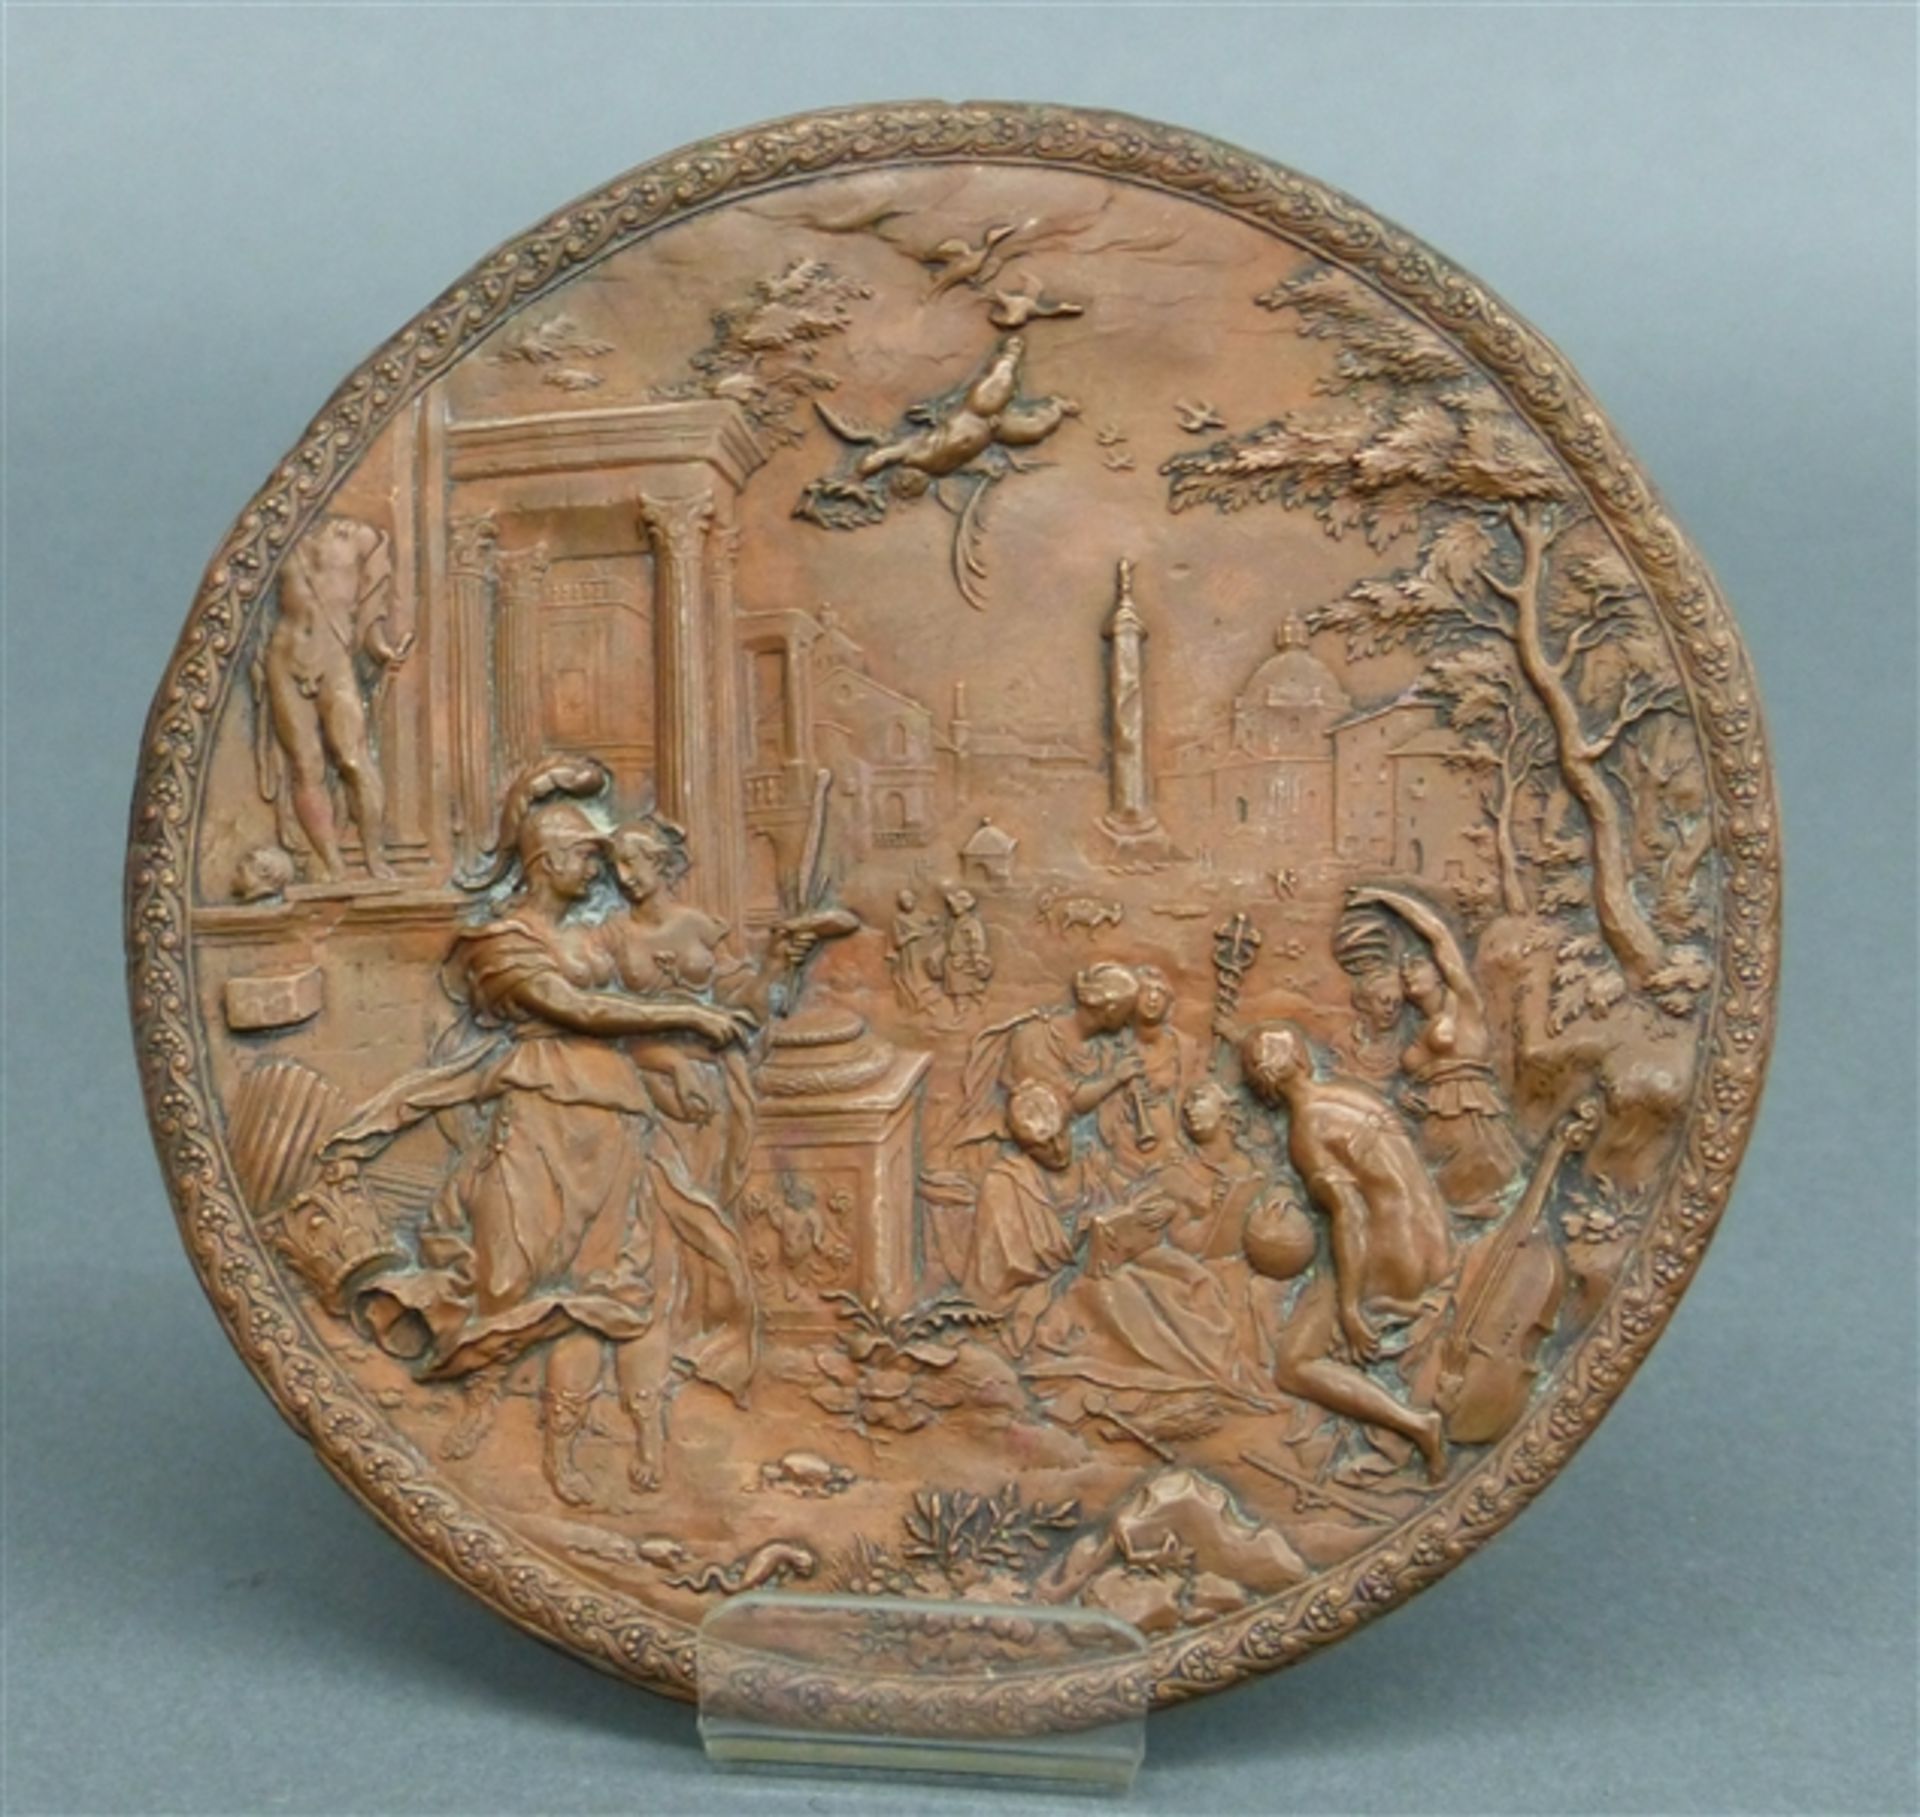 Kupferrelief 18./19. Jh., nach einem Kupferstich von Sedeler (um 1570-1629), "Minerva führt die